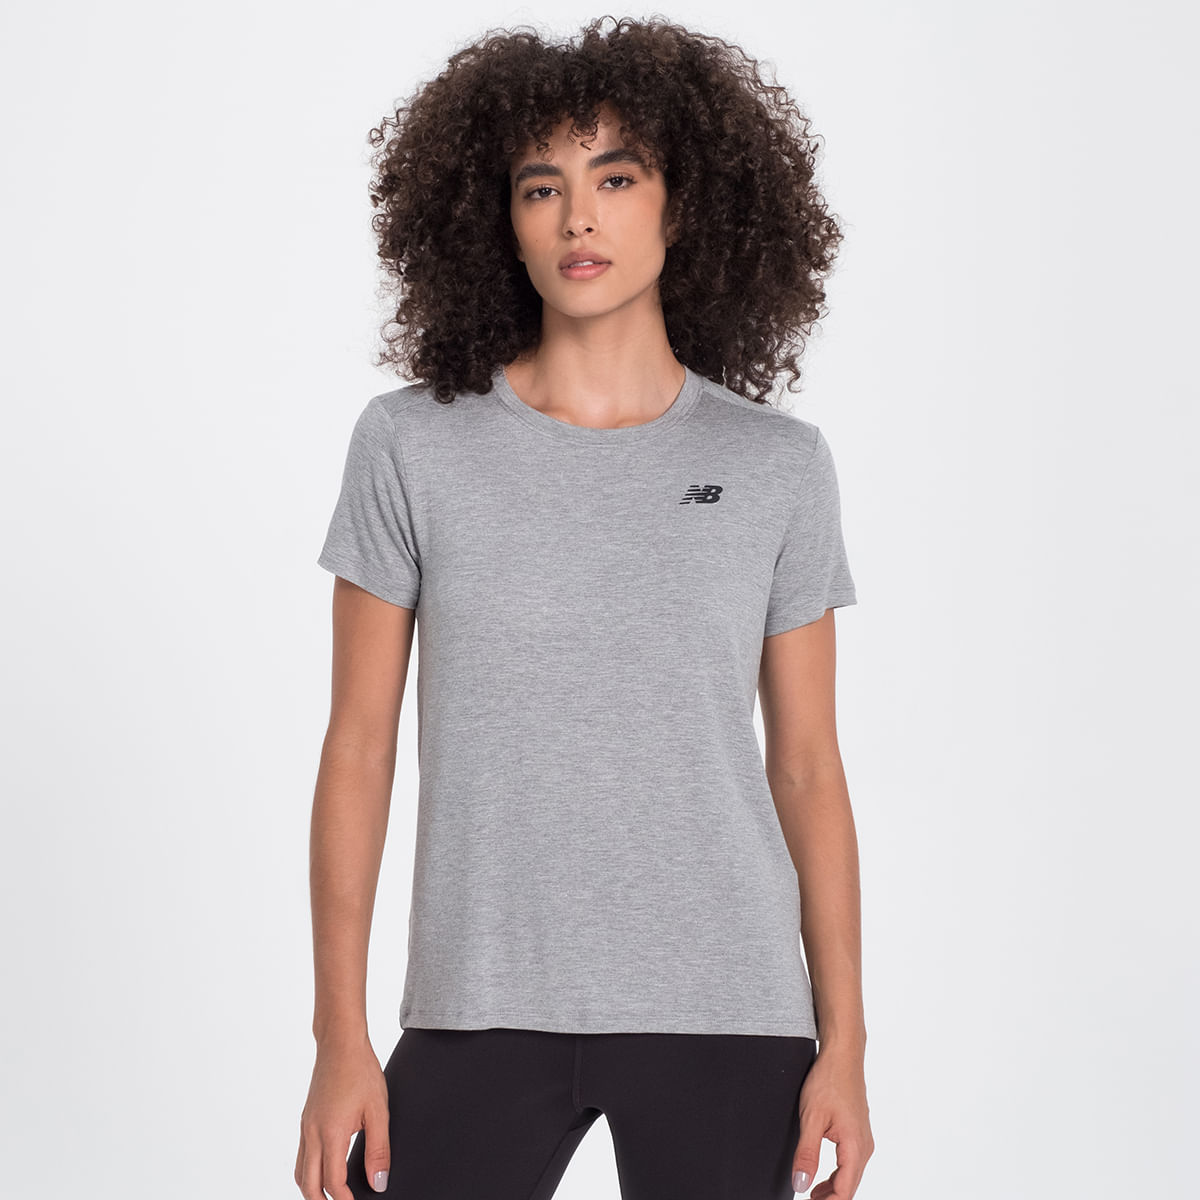 Camiseta Accelerate Masculina - New Balance